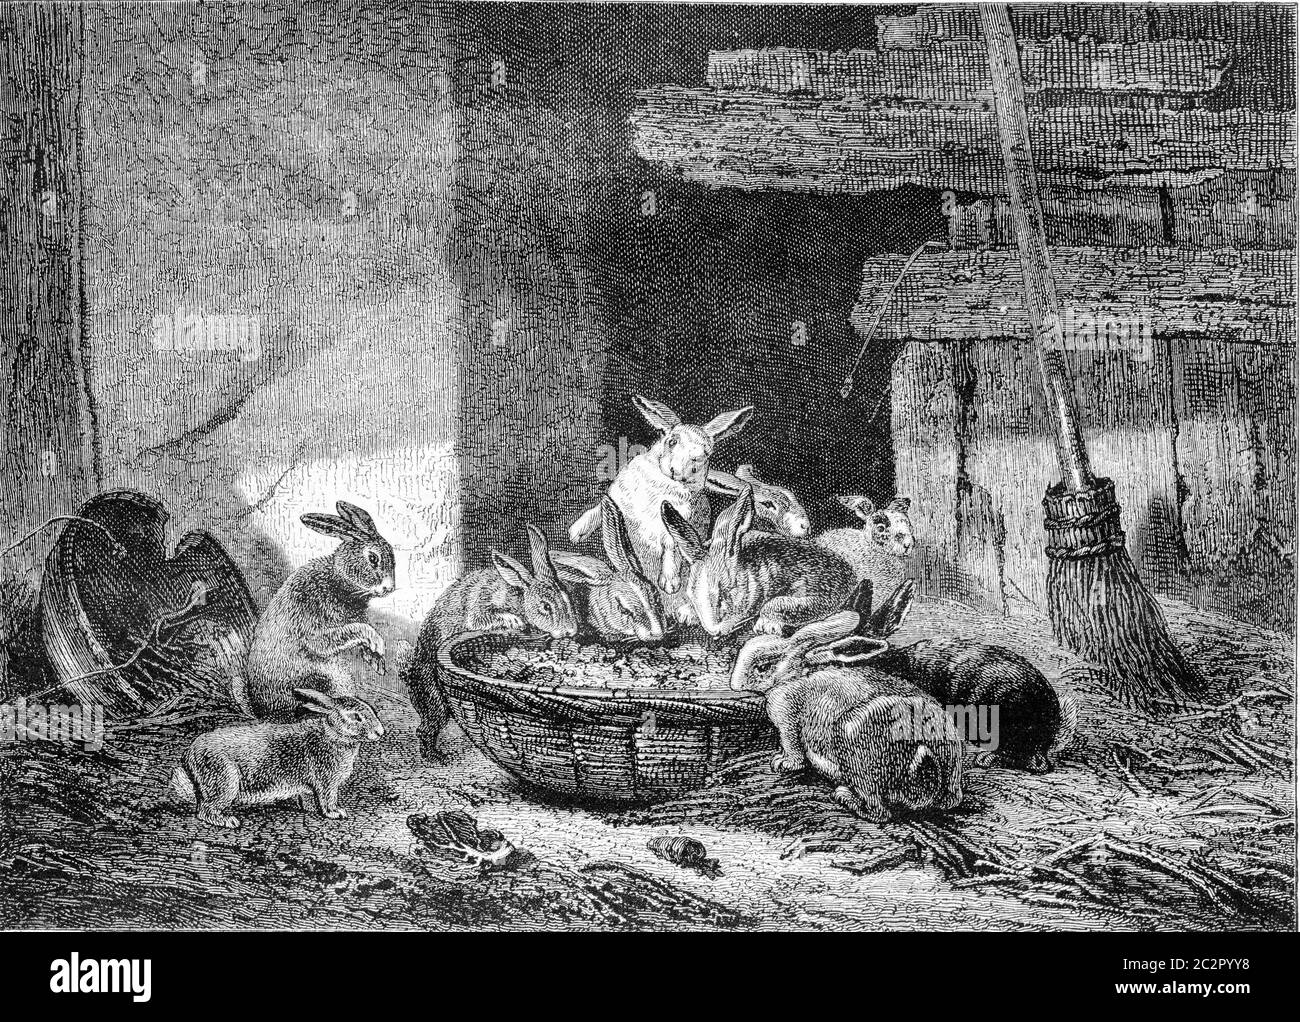 Exposition de peinture de 1857. Lapins de déjeuner, illustration gravée vintage. Magasin Pittoresque 1857. Banque D'Images